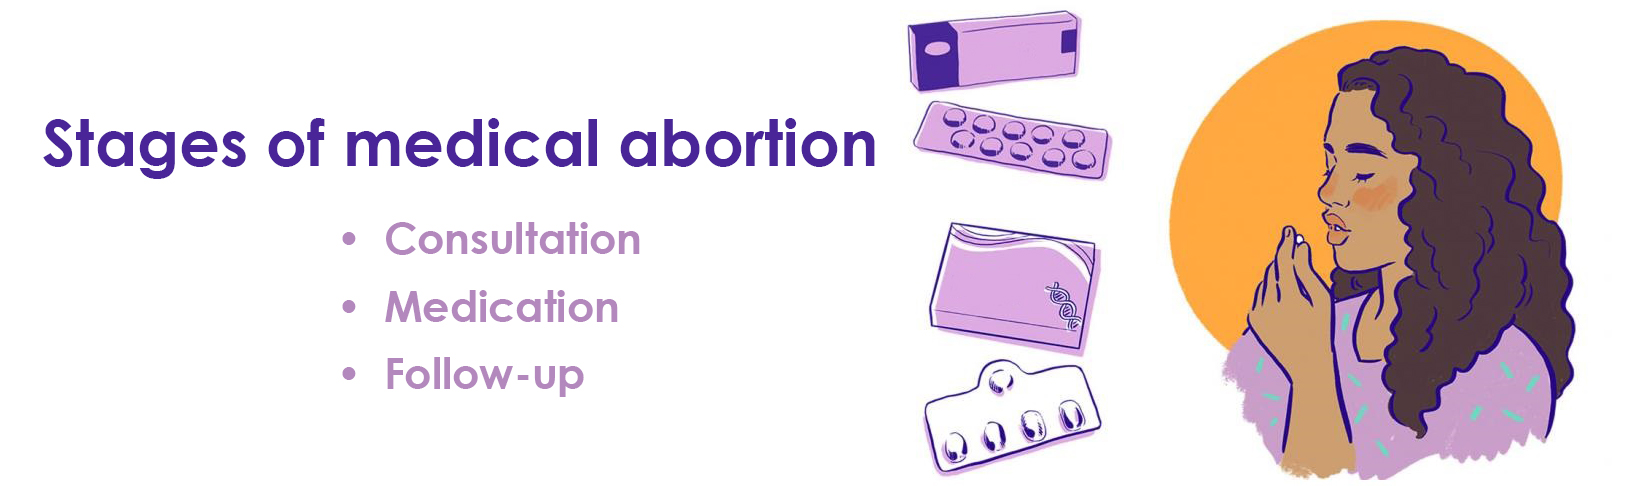 Этапы медикантозного аборта в Харькове